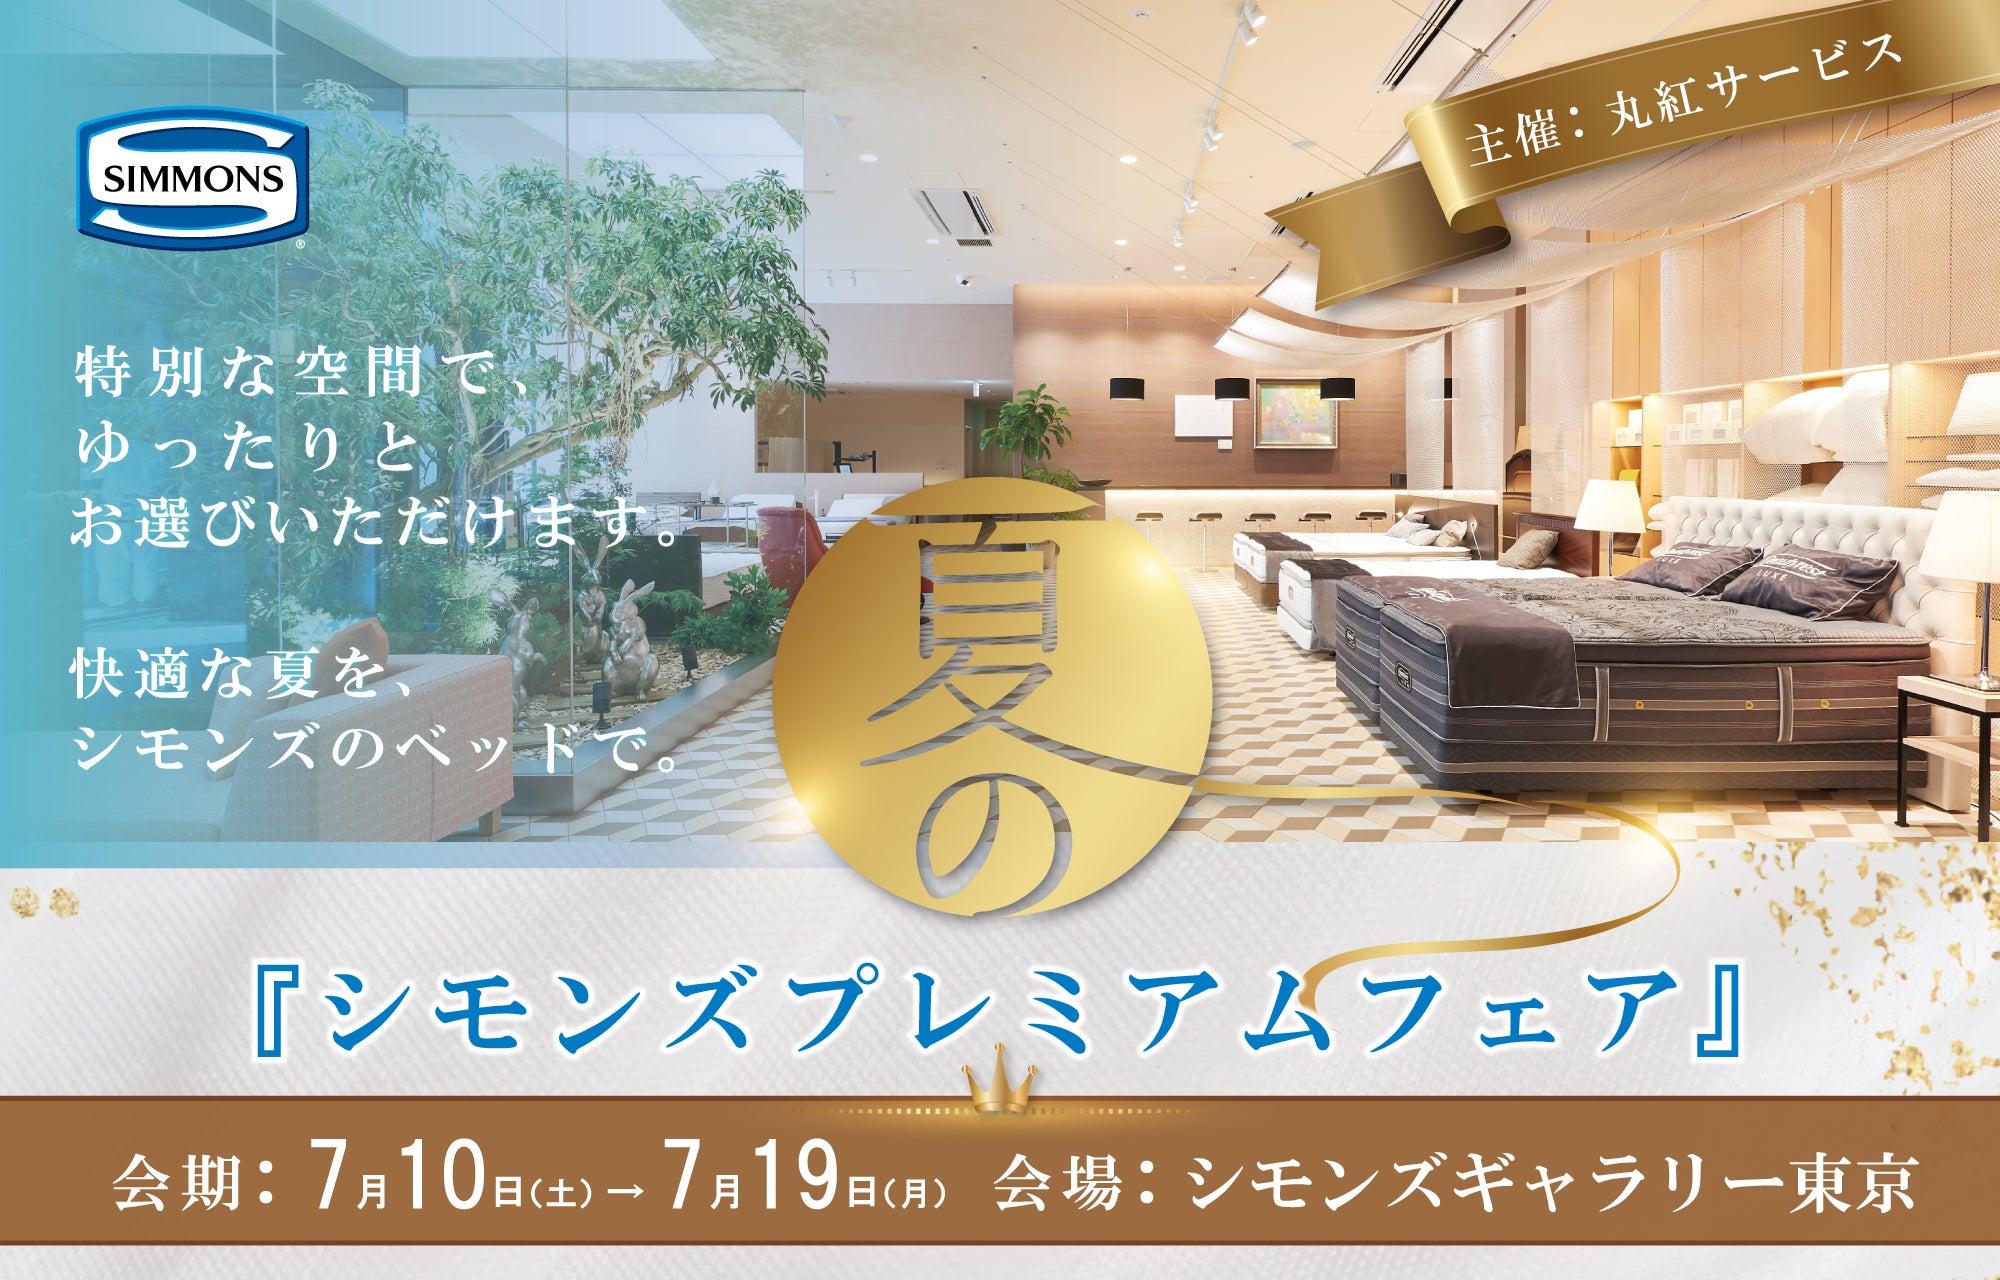 シモンズギャラリー東京プレミアムフェア アウトレット家具 インテリア のセール イベント情報ならseiloo